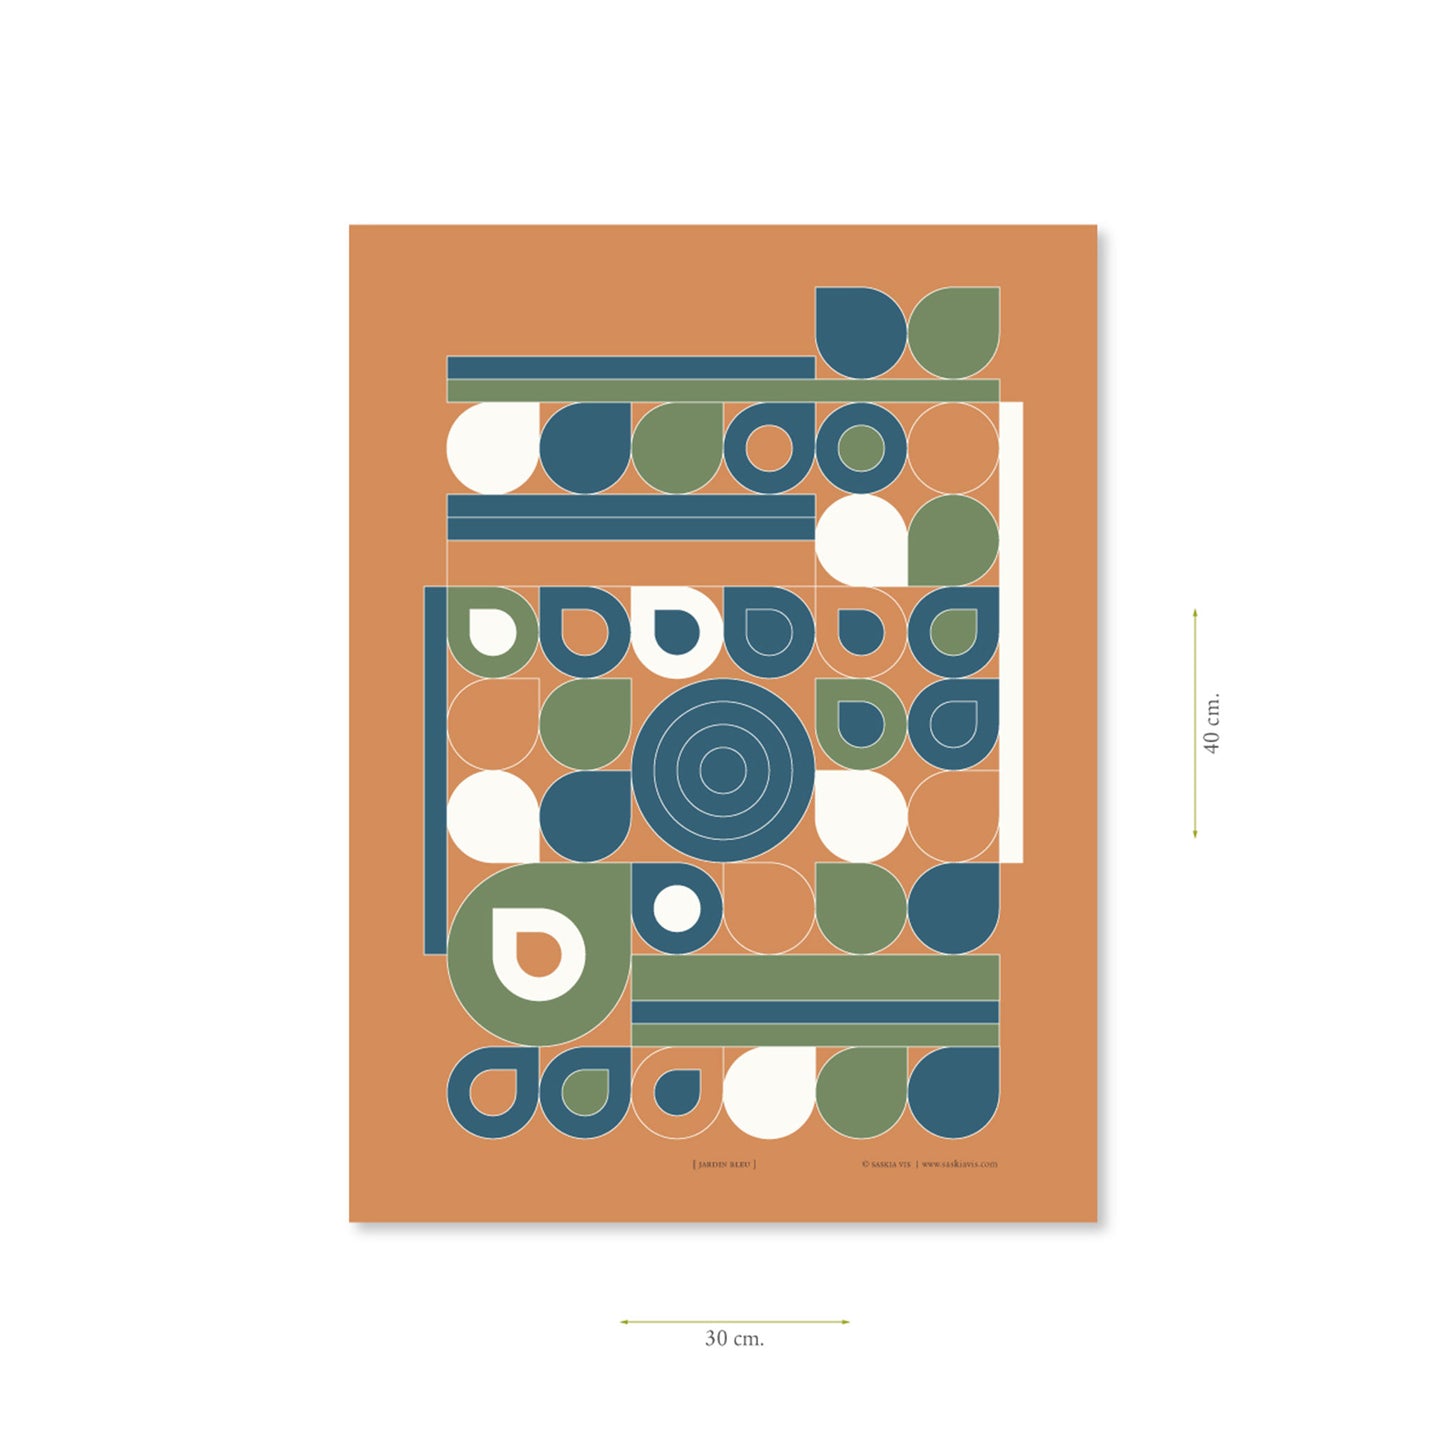 Productafbeelding poster "jardin bleu" met aanduiding van het formaat erop weergegeven 30 x 40 cm